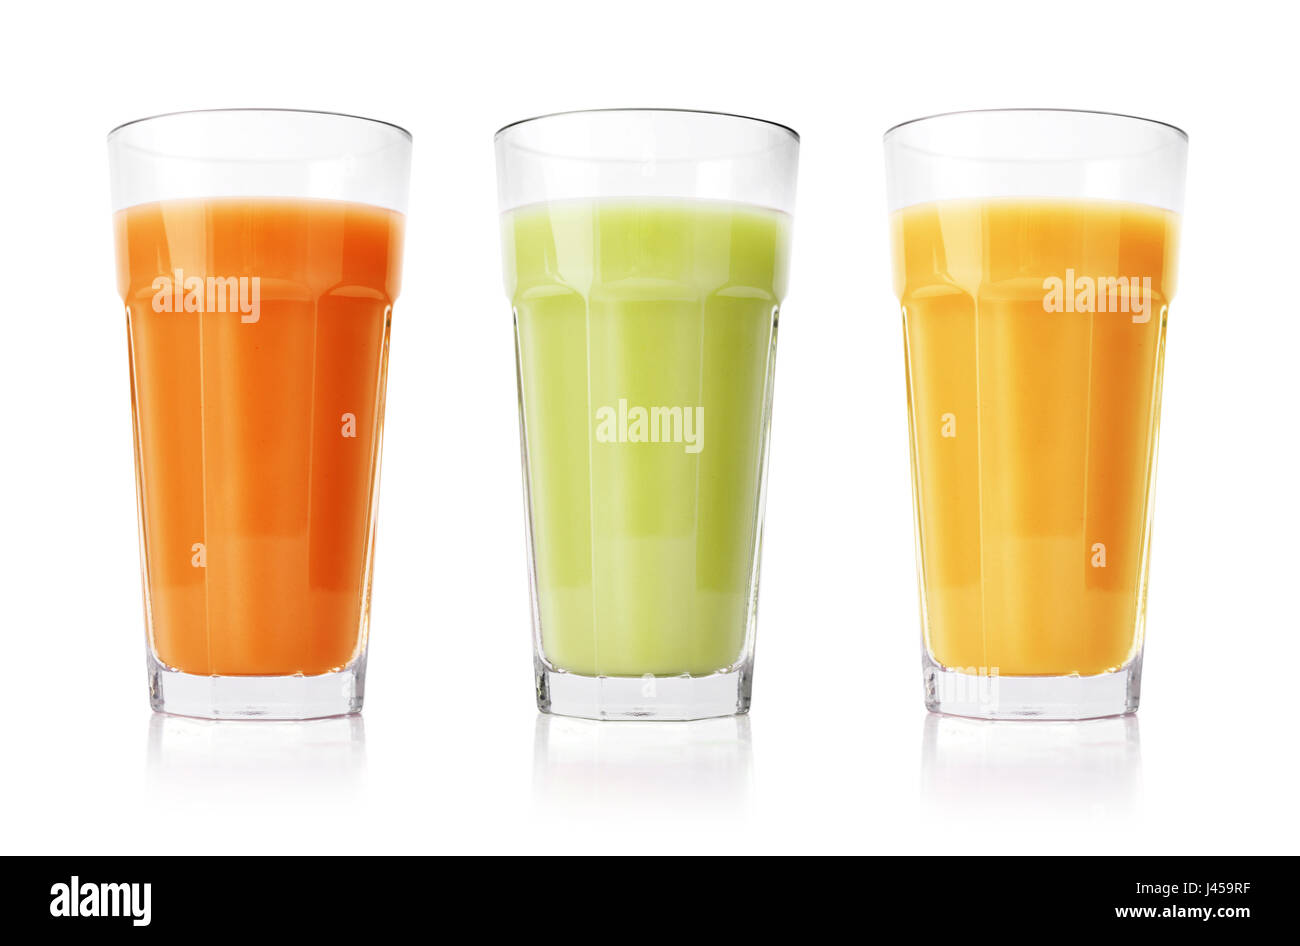 Grün, orange und gelben Smoothies in Gläsern isoliert auf weißem Hintergrund Stockfoto